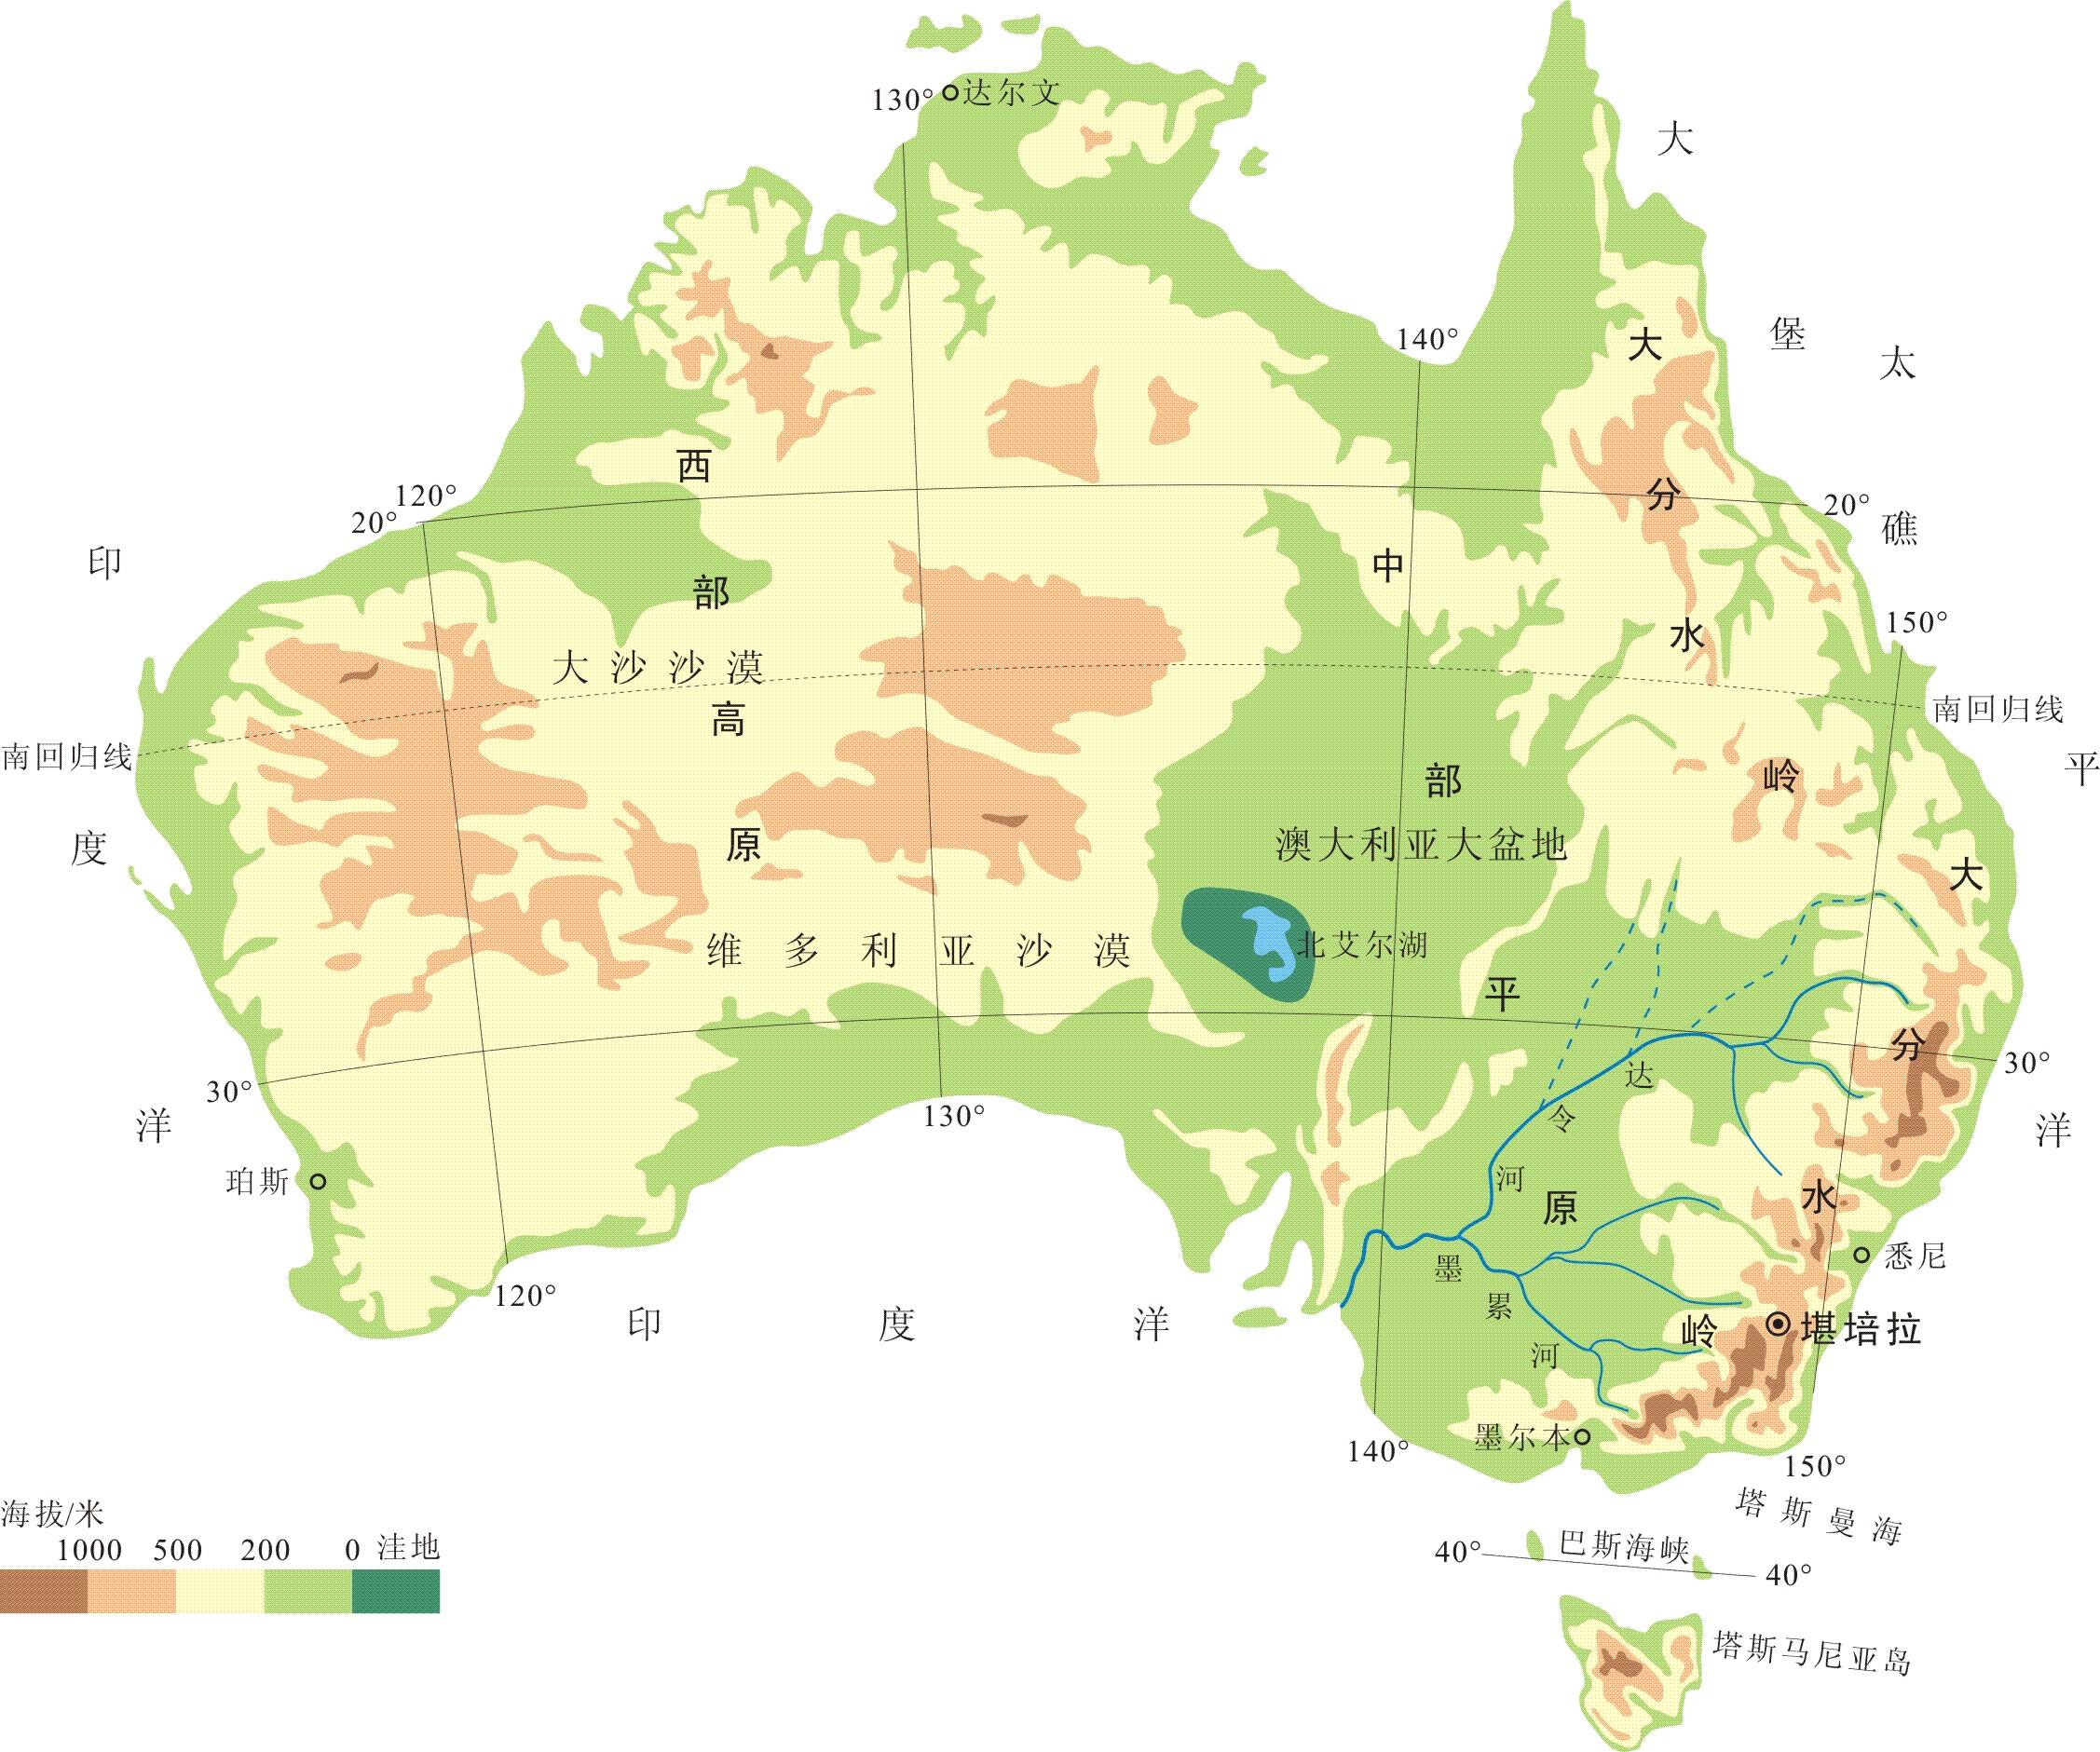 地下水和地势高低有关吗,澳大利亚大陆地形特征东部大分水岭纵贯南北